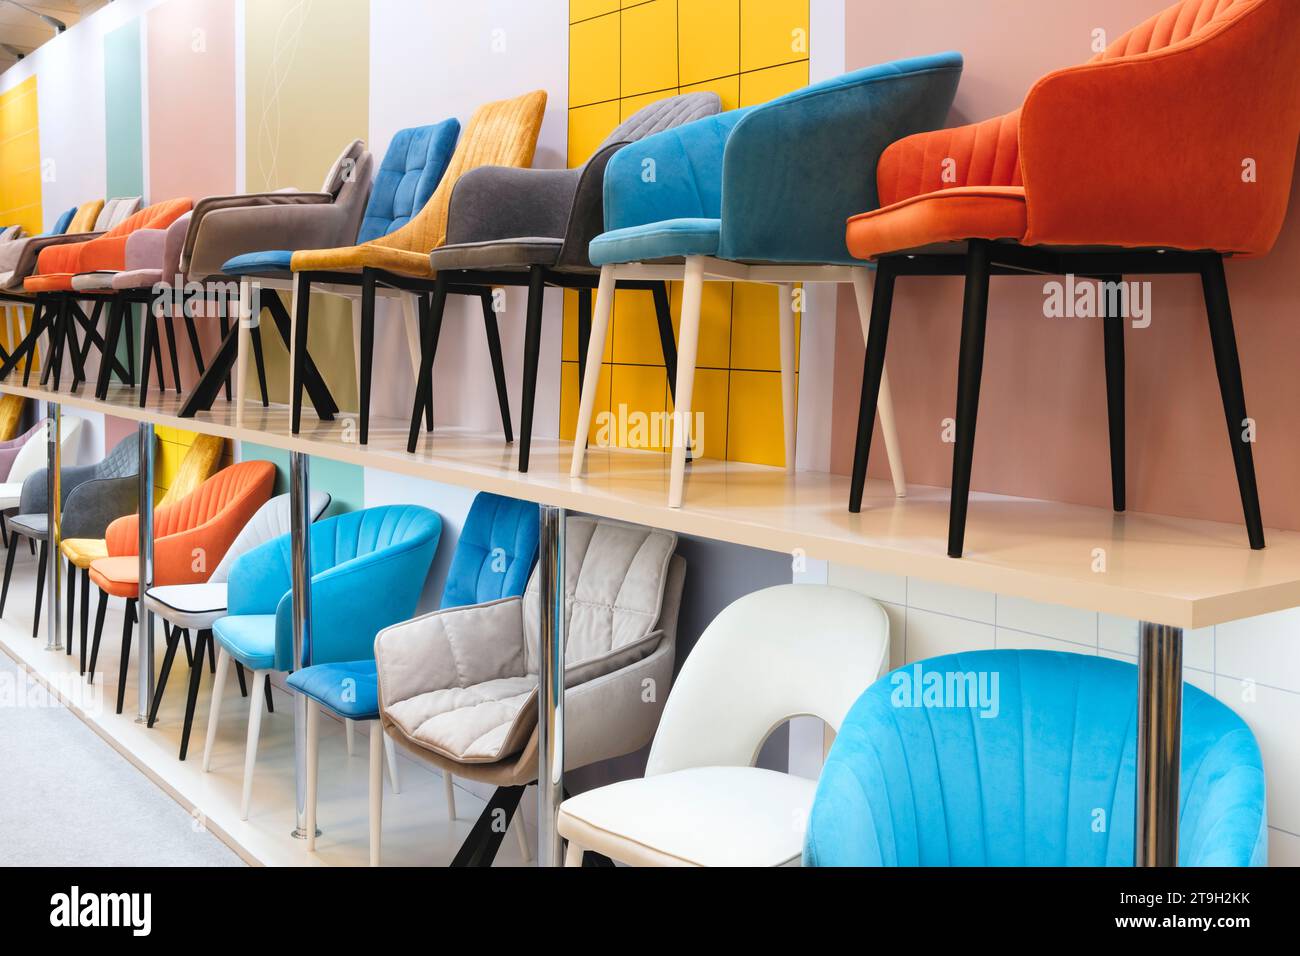 De nombreuses chaises et fauteuils différents sont exposés dans un magasin de meubles Banque D'Images